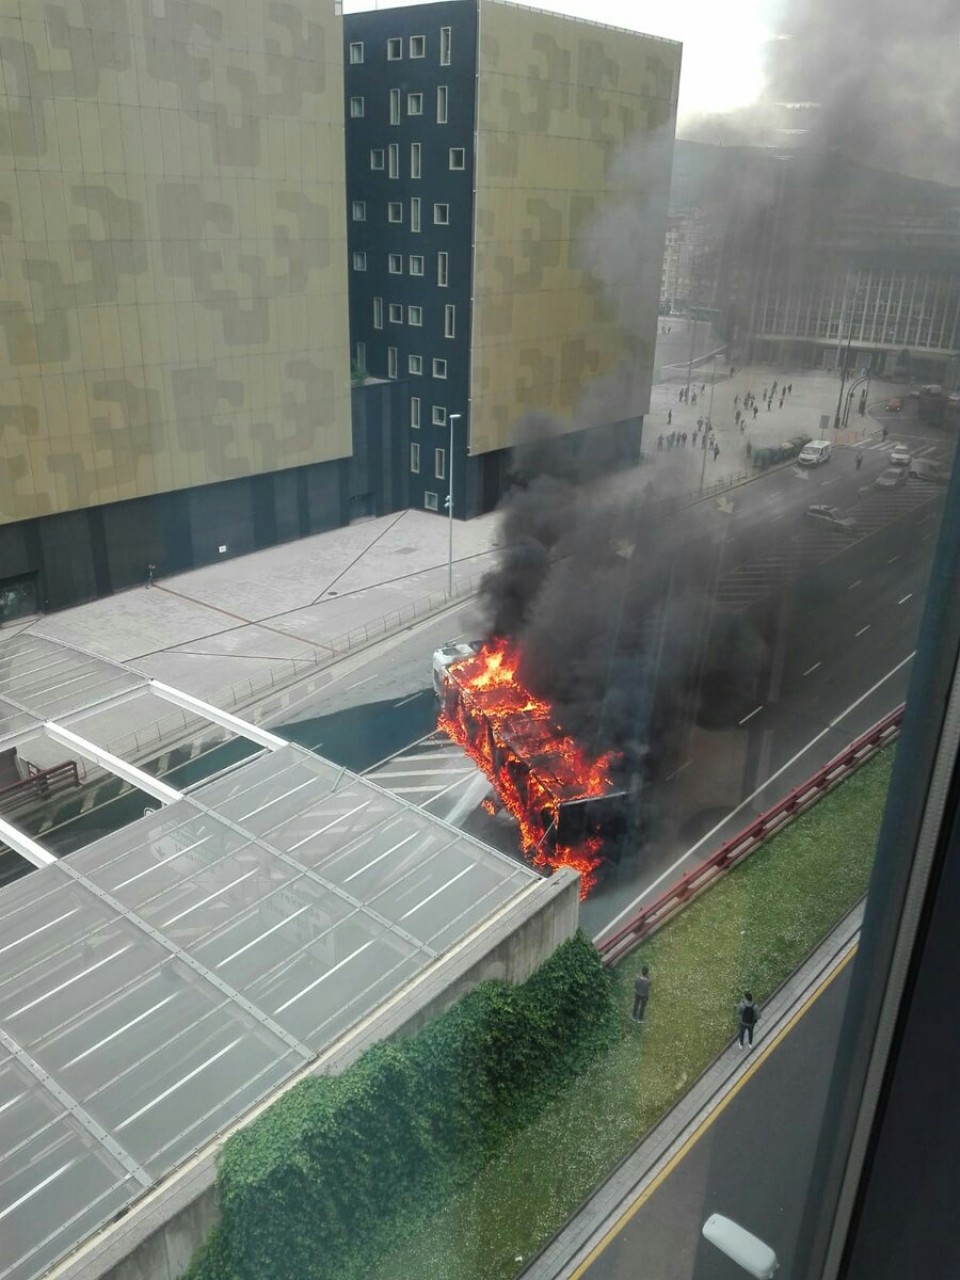 El camión incendiado. Imagen: Eitb.eus